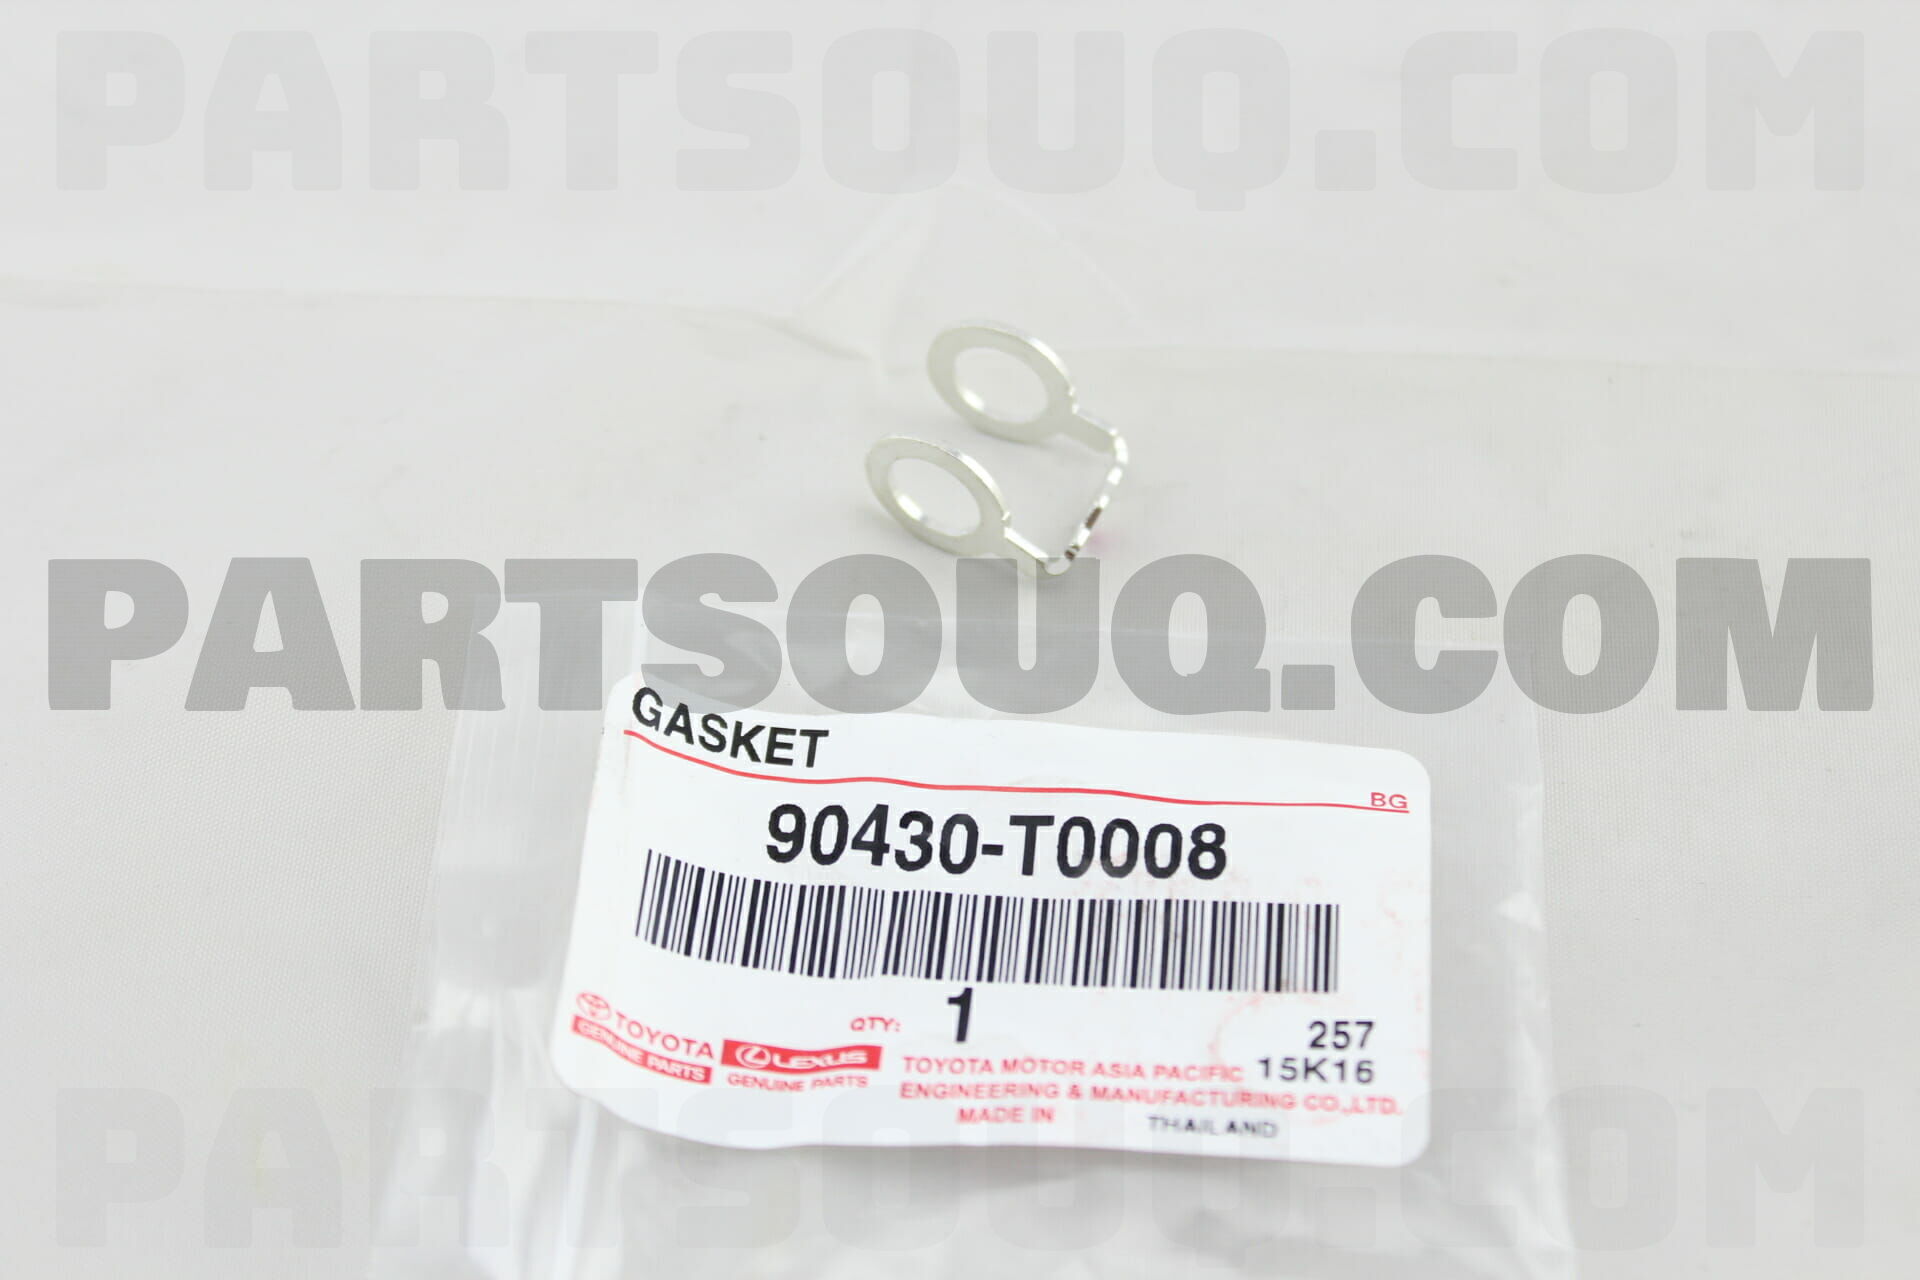 GASKET 90430T0008 | Toyota Parts | PartSouq